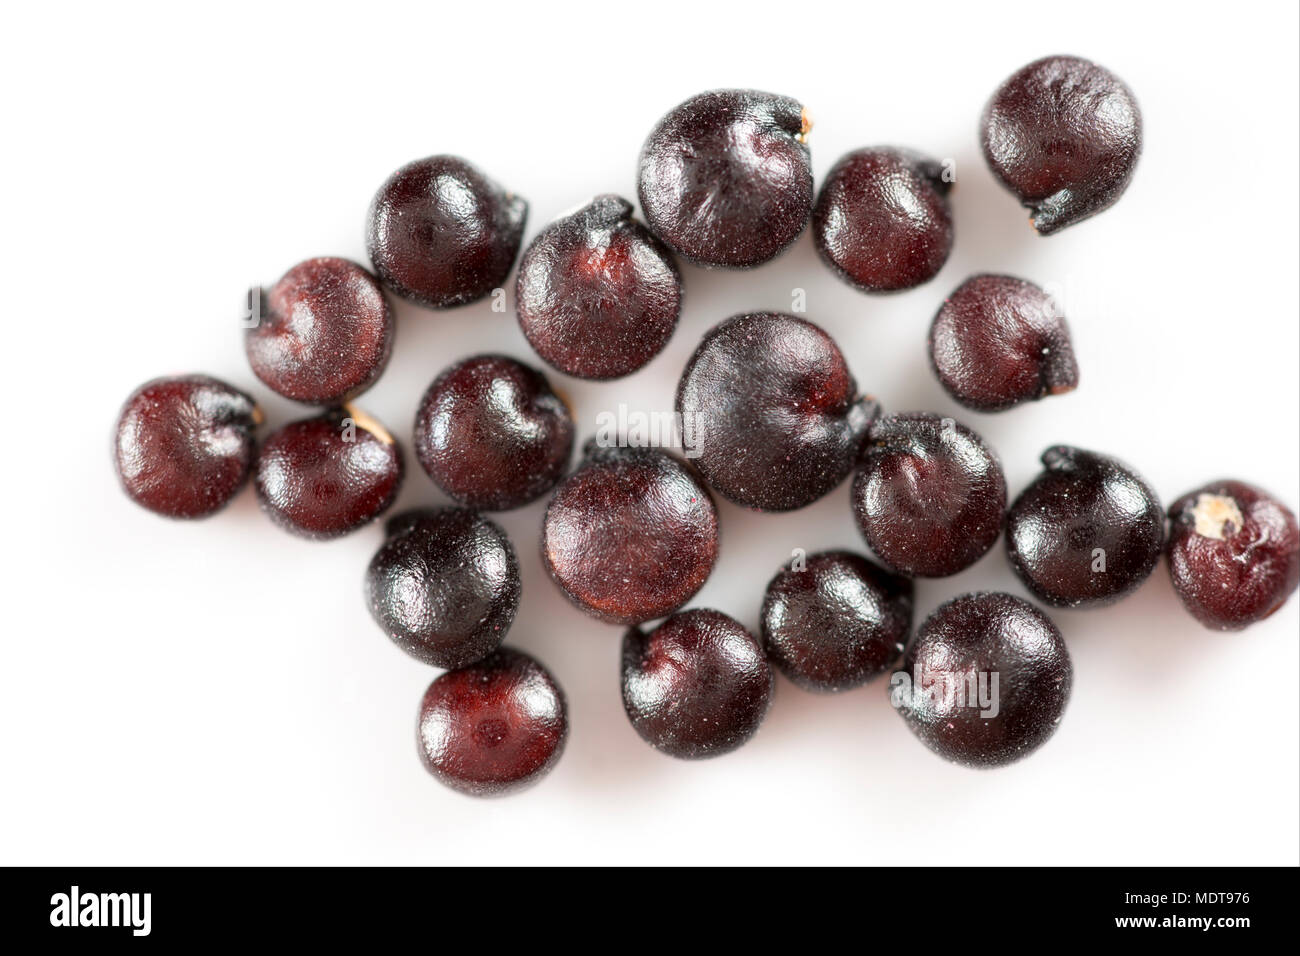 Les graines de quinoa Chenopodium quinoa noir à partir d'un supermarché en Angleterre. Le quinoa est originaire d'Amérique du Sud et est dans la famille des Amaranthaceae. Banque D'Images